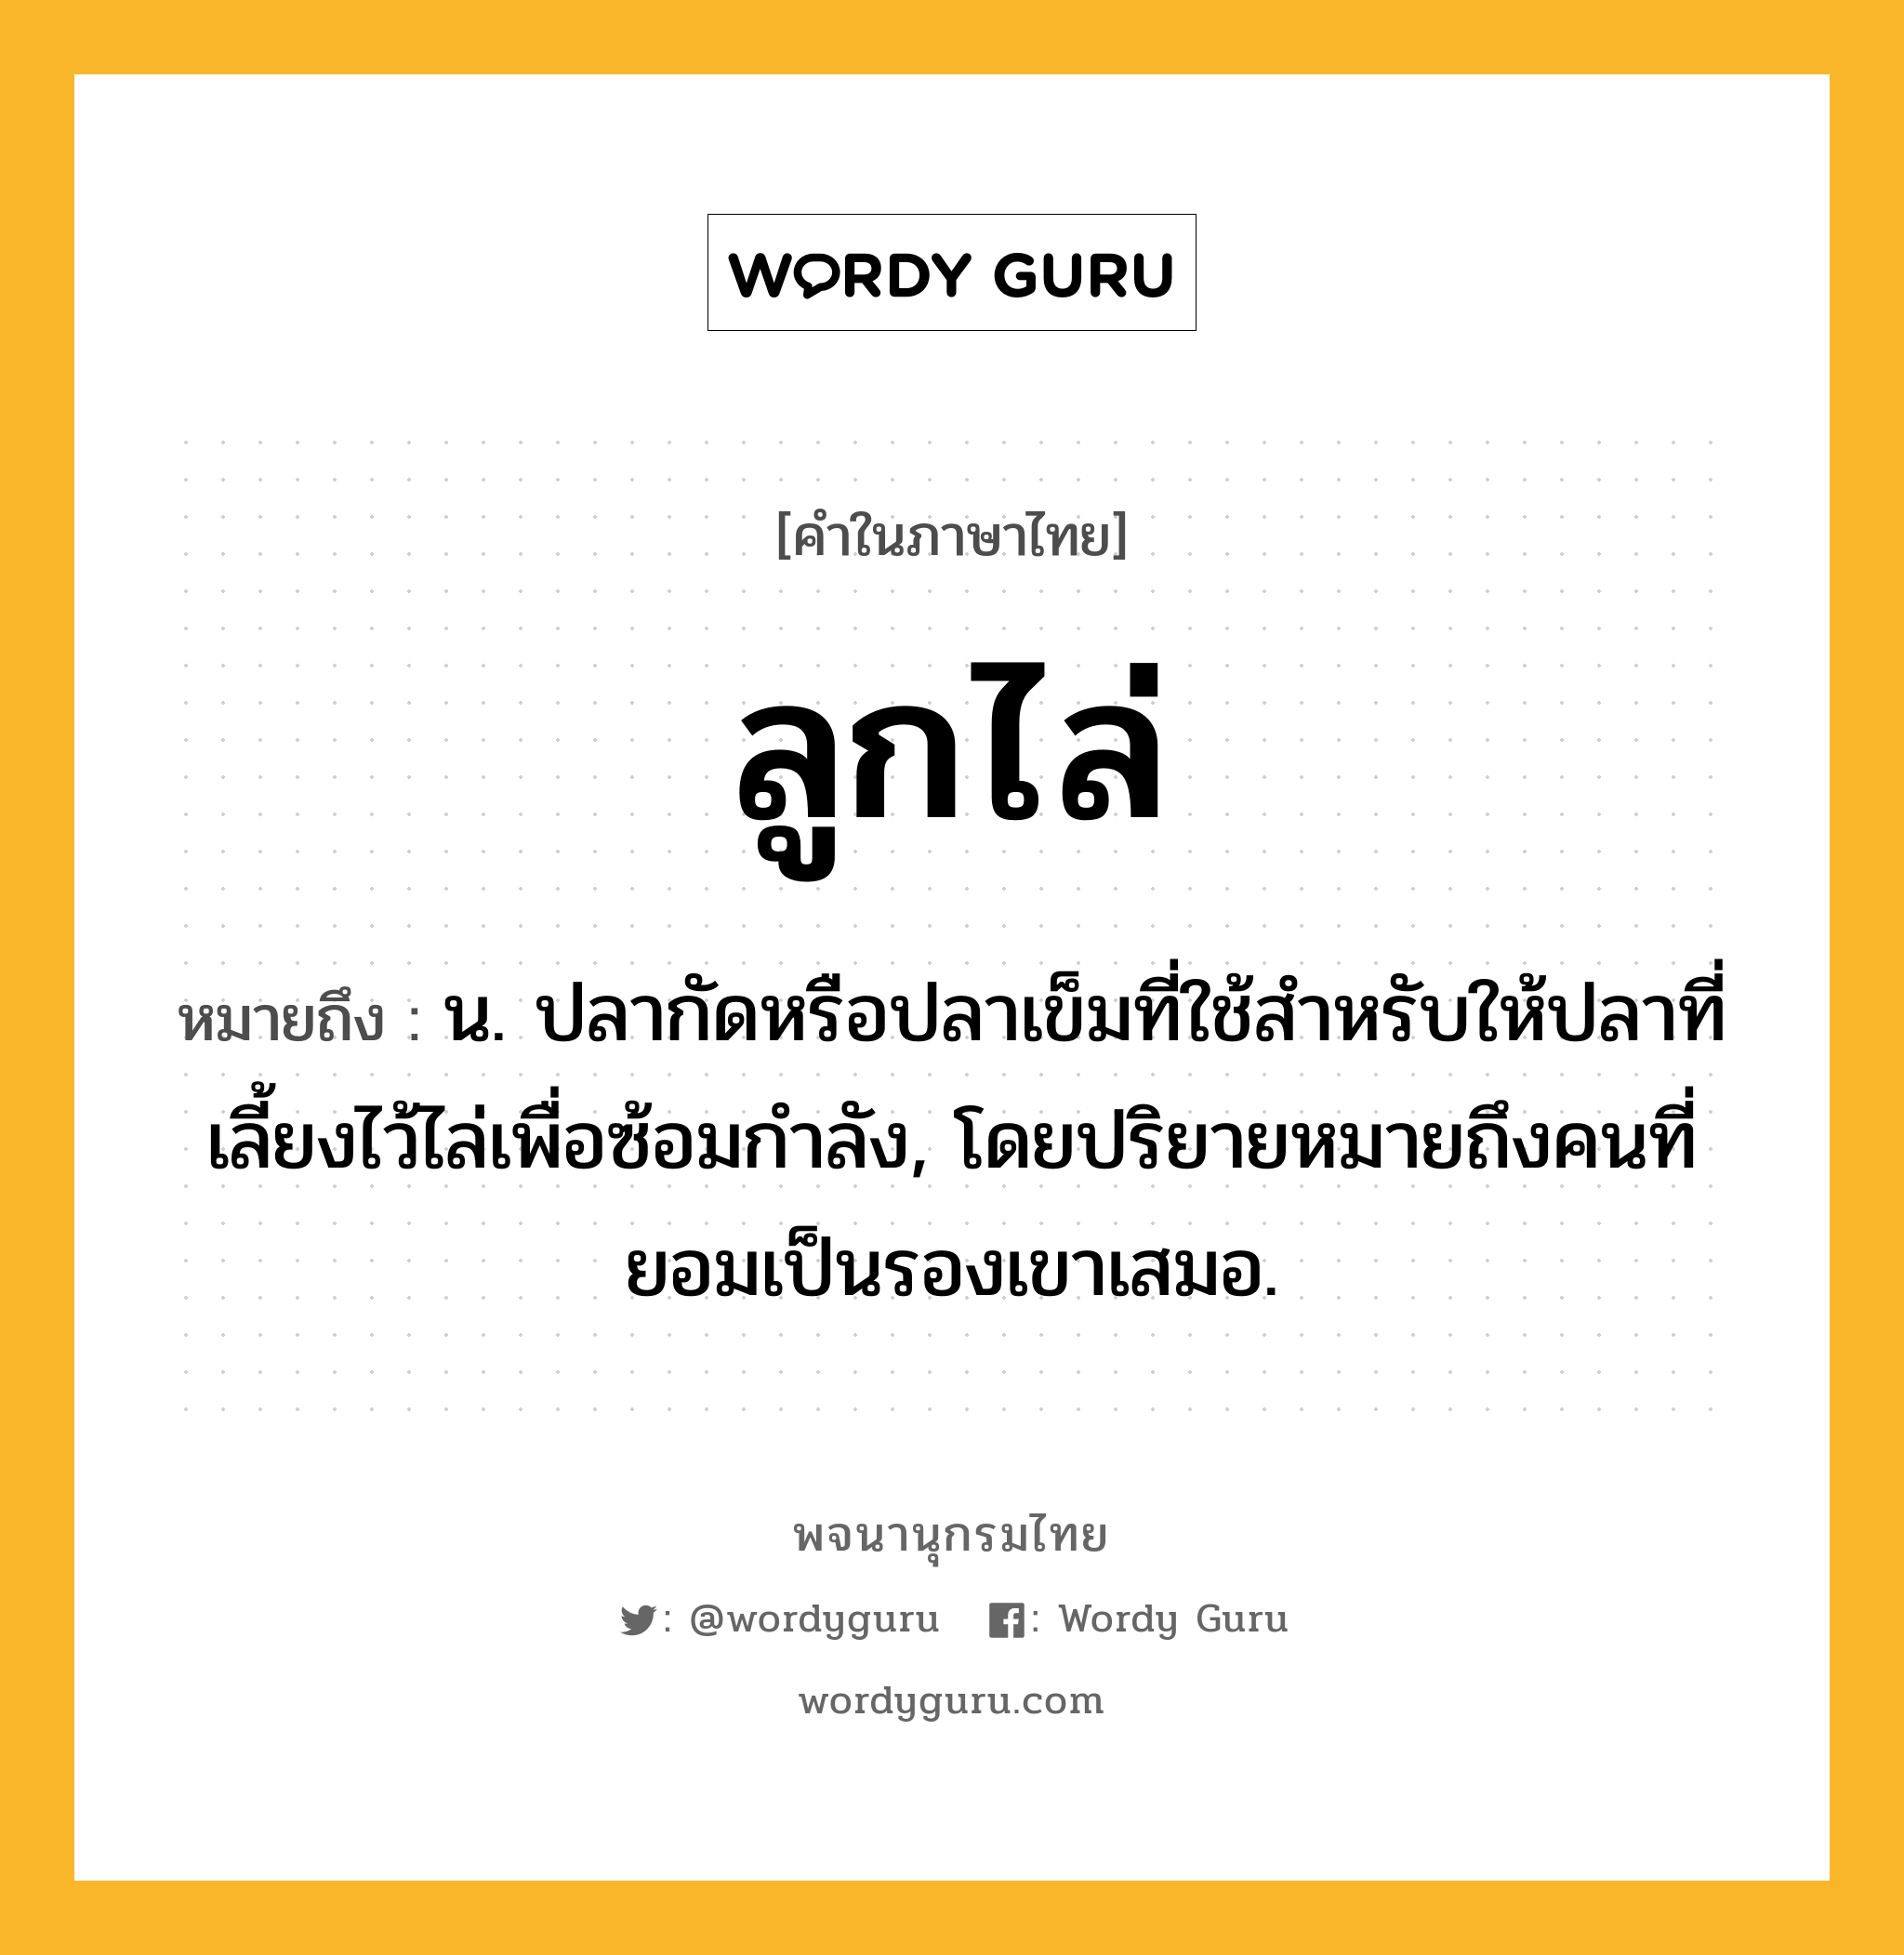 ลูกไล่ ความหมาย หมายถึงอะไร?, คำในภาษาไทย ลูกไล่ หมายถึง น. ปลากัดหรือปลาเข็มที่ใช้สําหรับให้ปลาที่เลี้ยงไว้ไล่เพื่อซ้อมกําลัง, โดยปริยายหมายถึงคนที่ยอมเป็นรองเขาเสมอ.